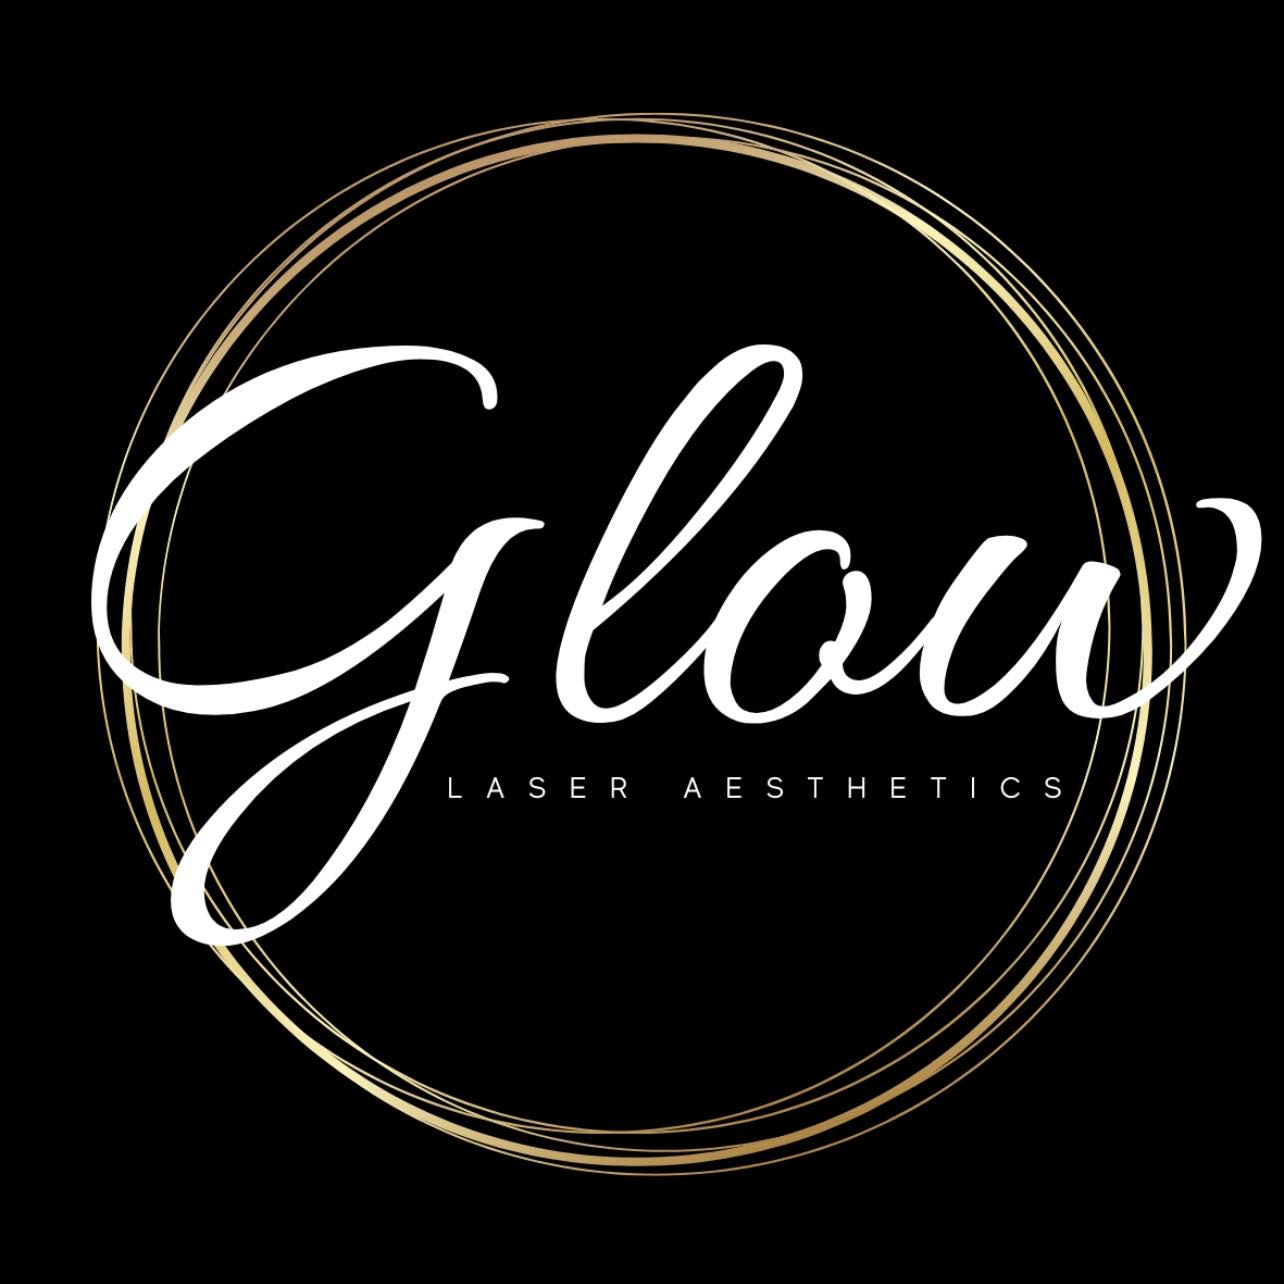 Glow Laser Aesthetics